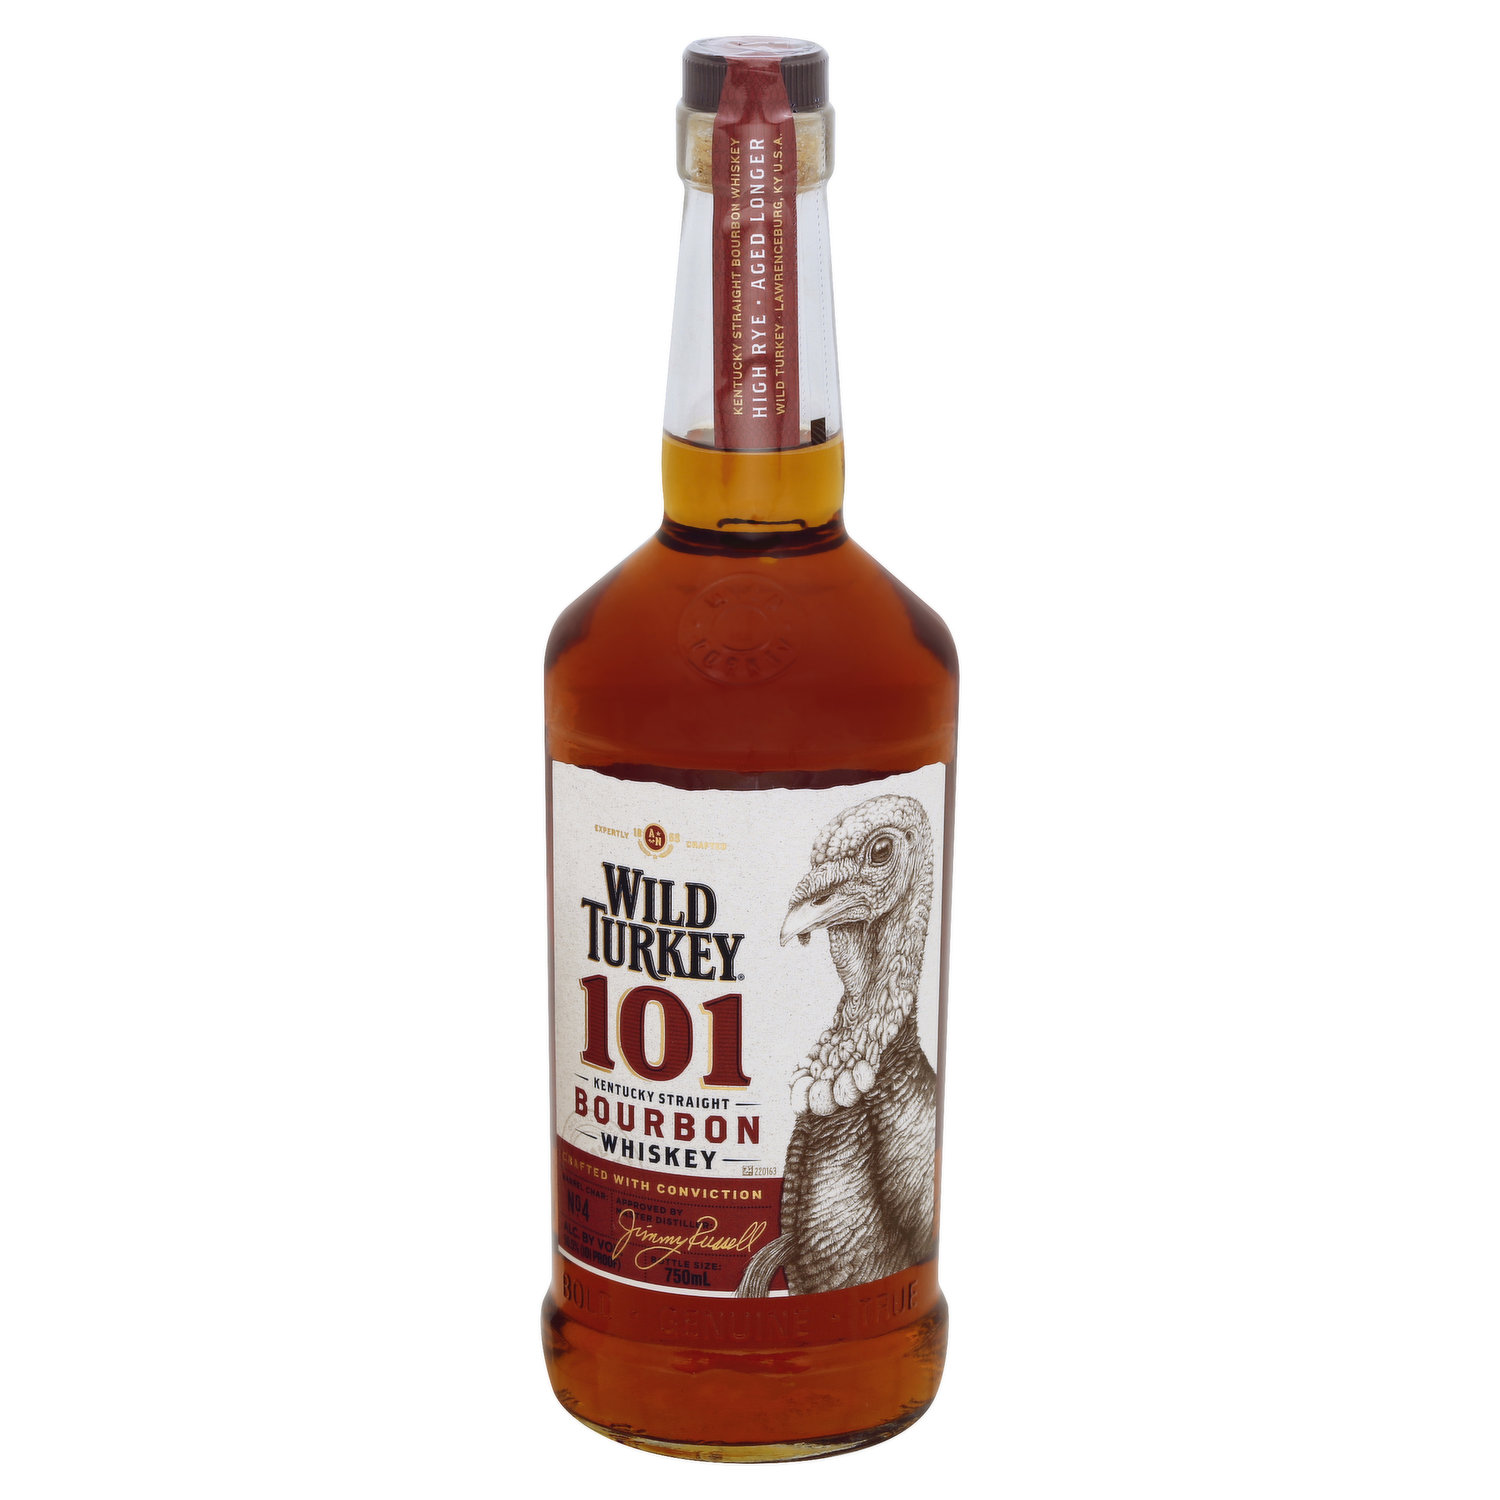 Wild Turkey Whiskey, Kentucky Straight Bourbon, 101